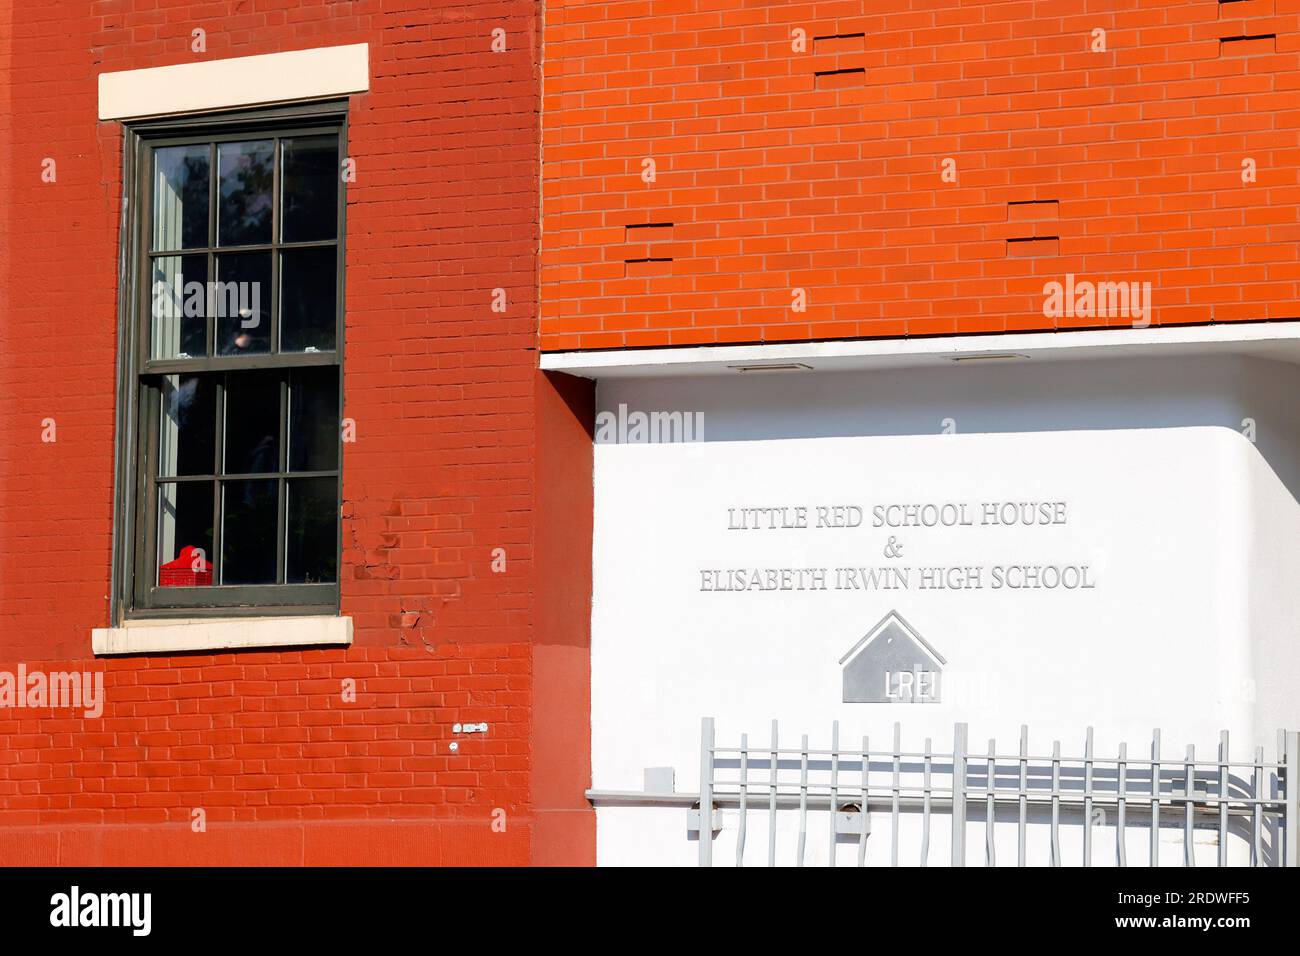 Little Red School House und Elisabeth Irwin High School, 272 6. Ave, New York, außerhalb einer unabhängigen, fortschrittlichen Bildungseinrichtung. Stockfoto